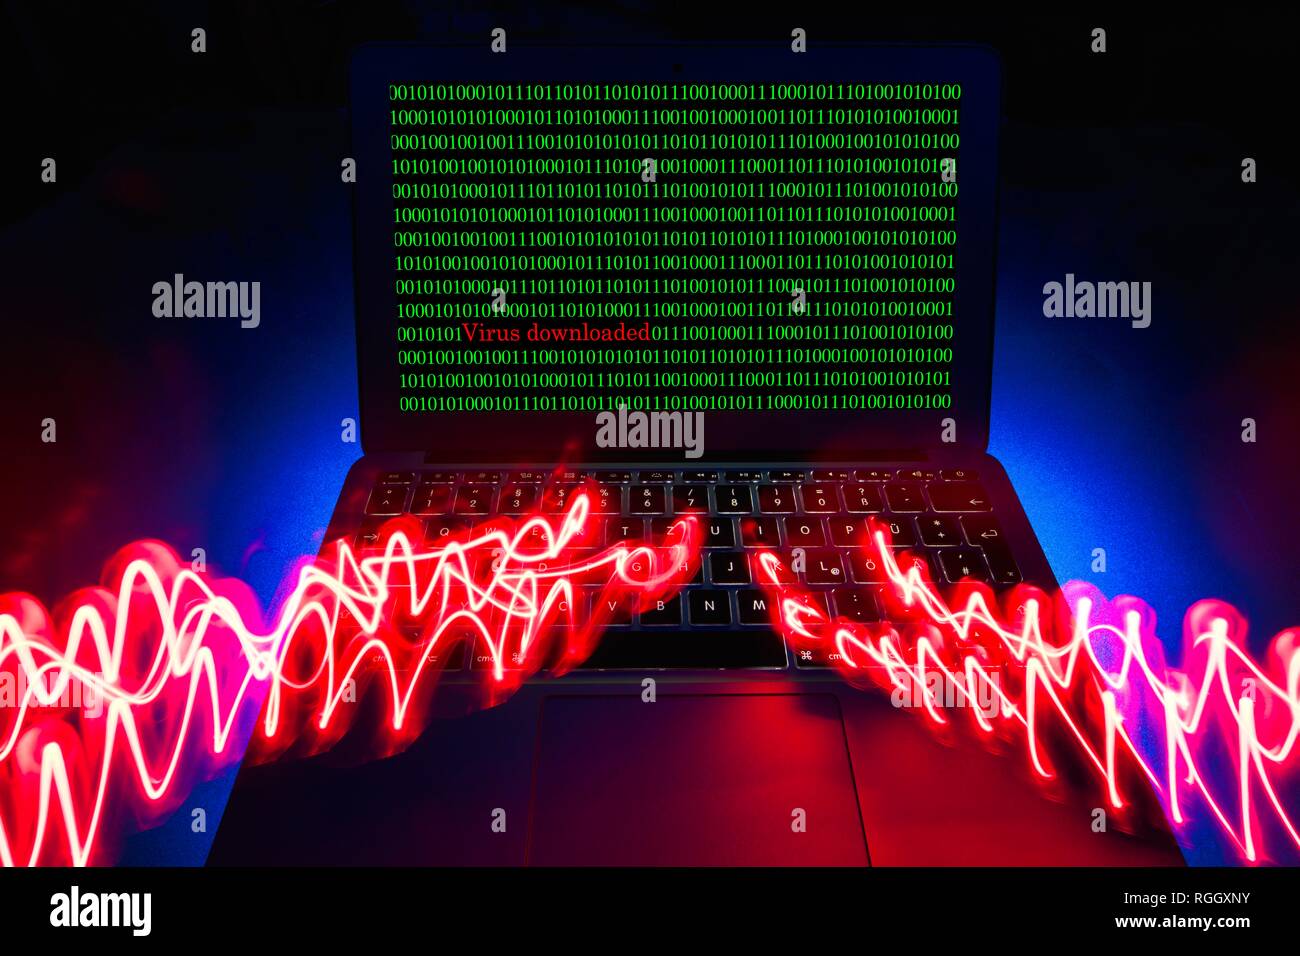 Image symbole du virus malware, alarme, la criminalité informatique, la protection des données, Bade-Wurtemberg, Allemagne Banque D'Images